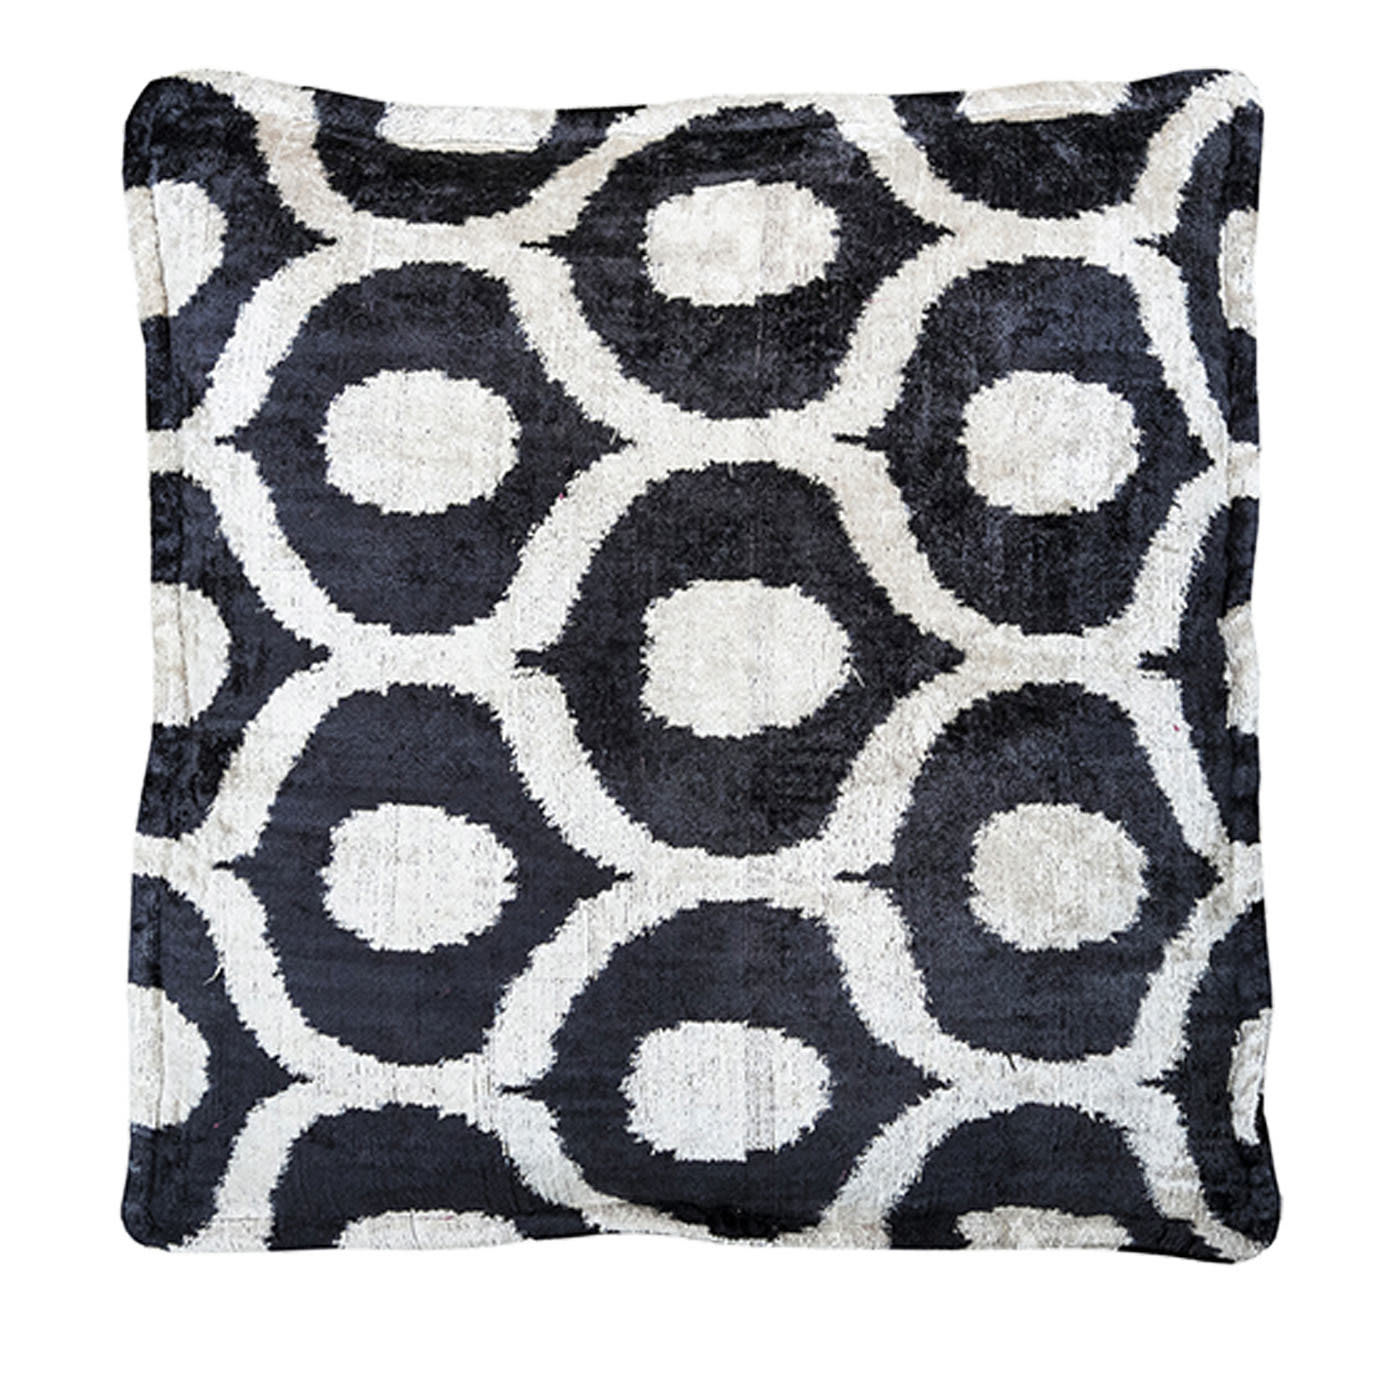 Silk Velvet Floor Cushion in Black and White - Les Ottomans